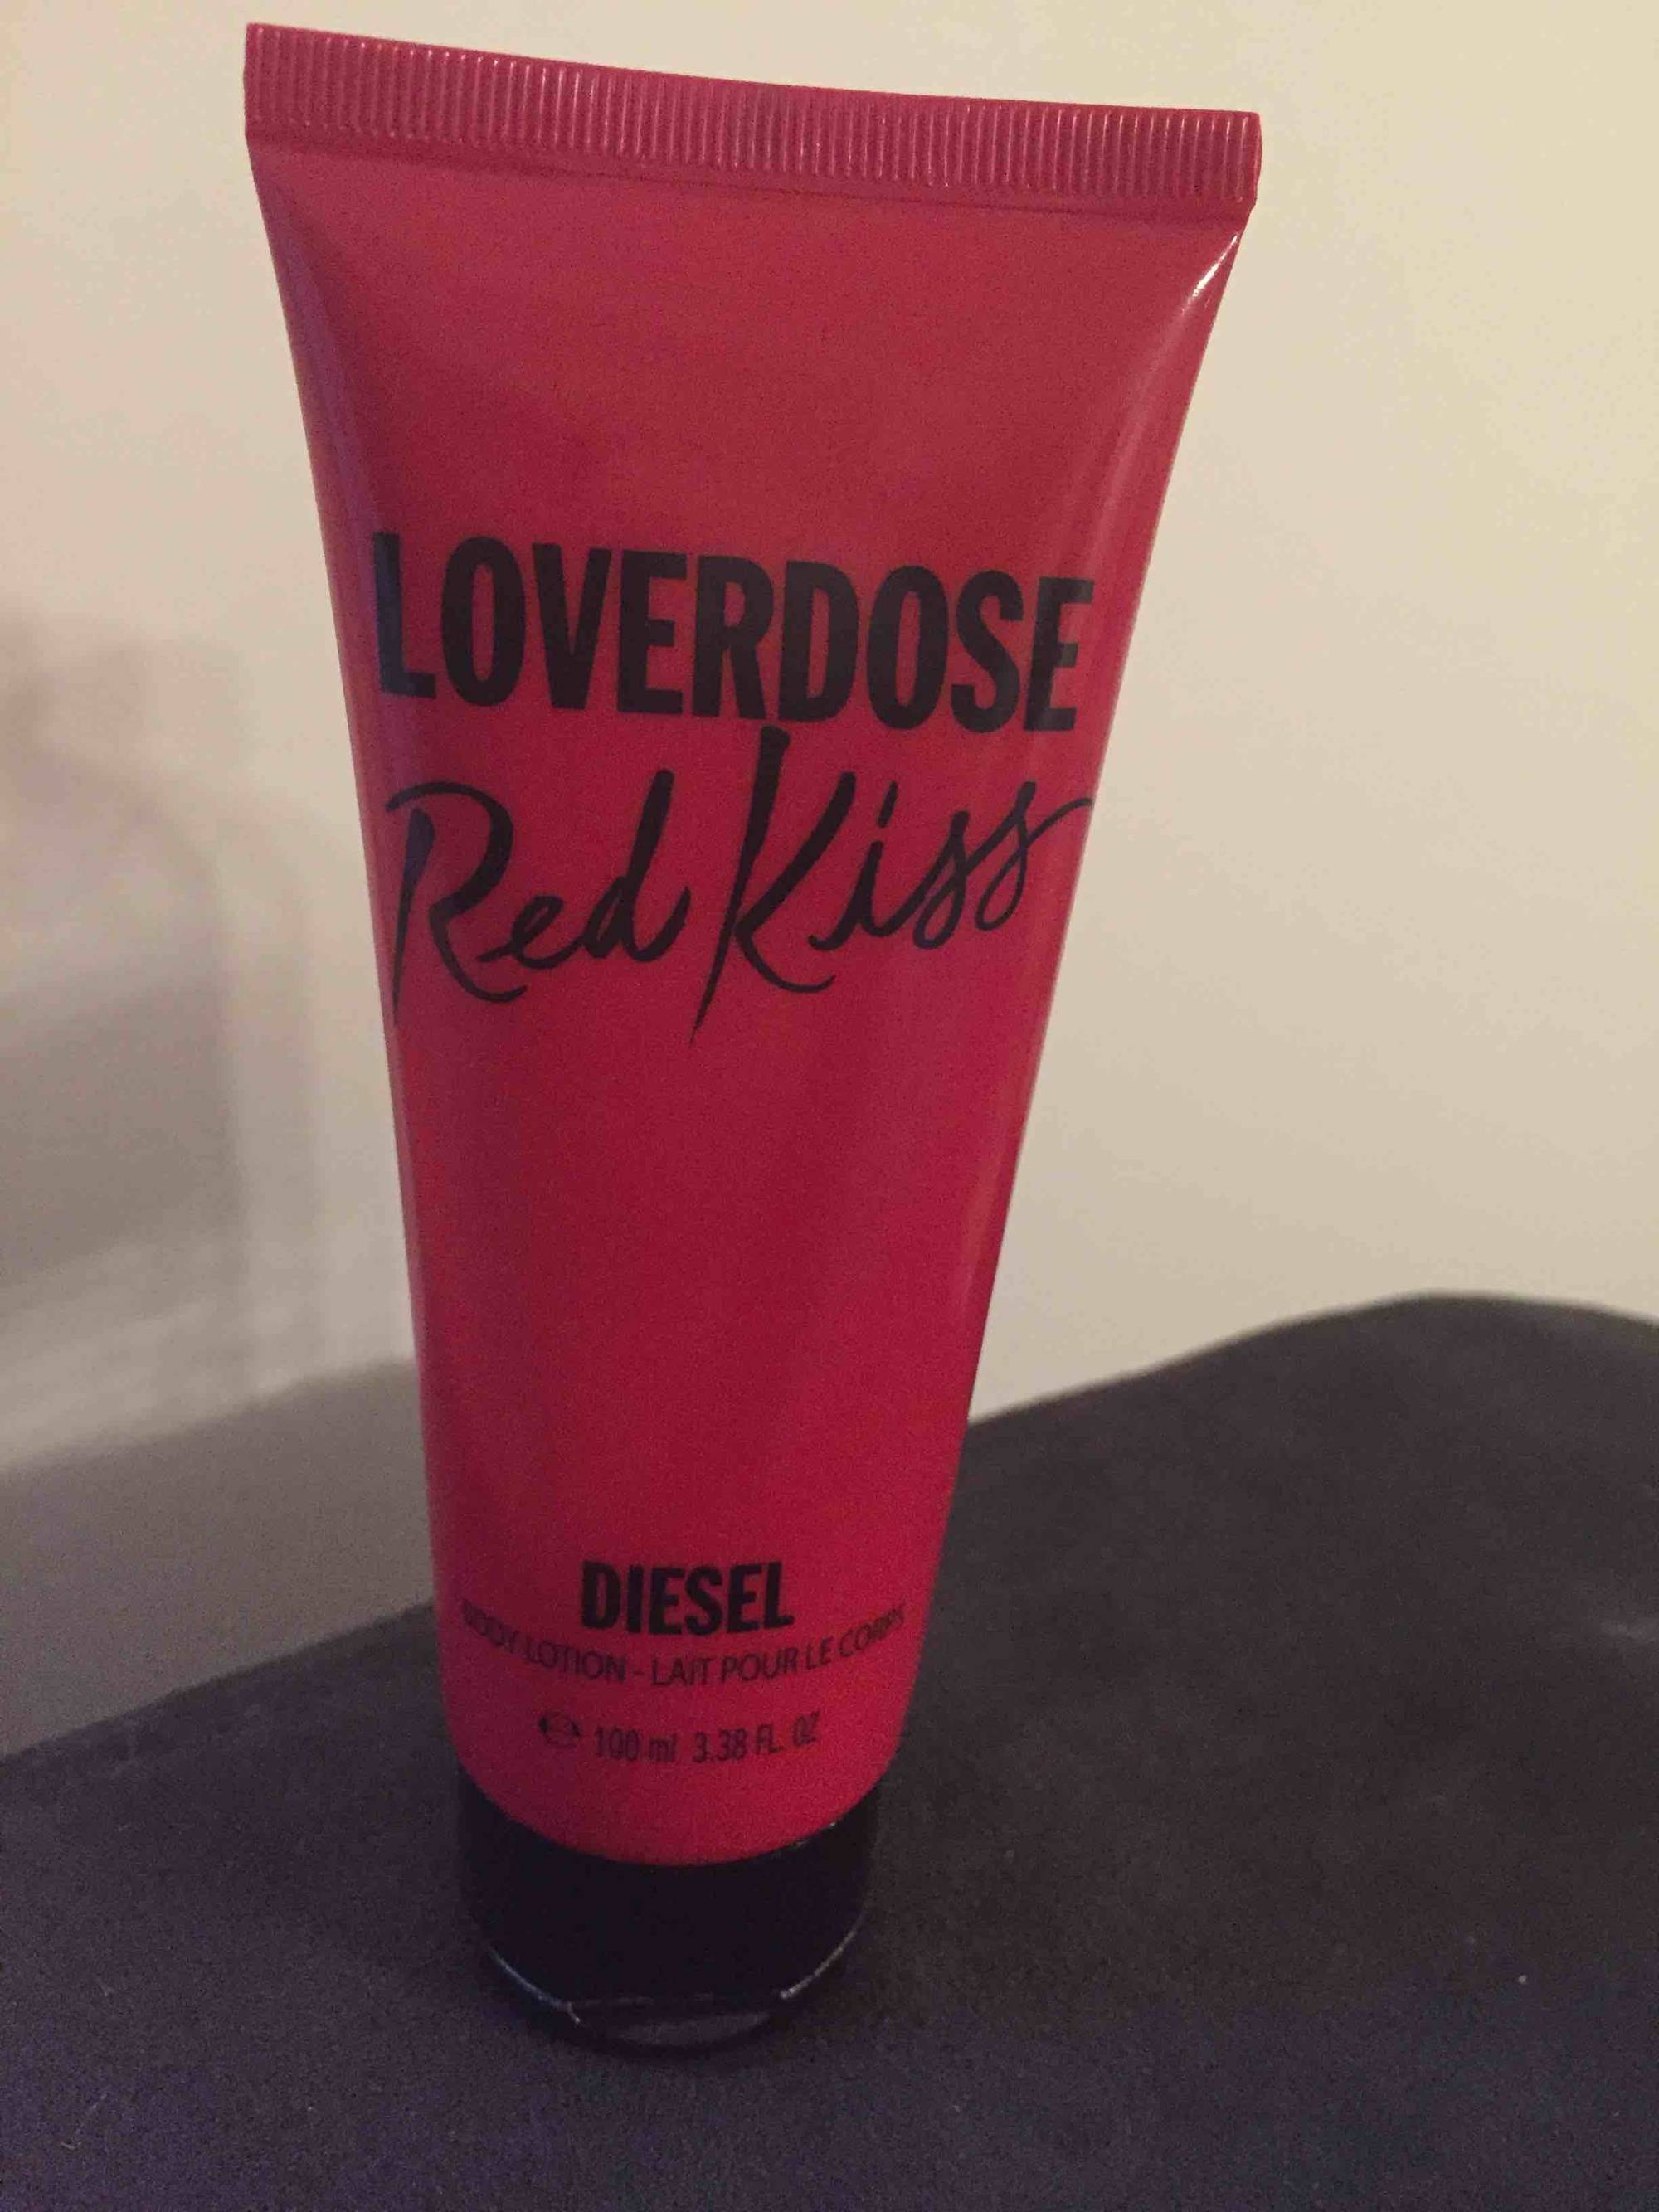 DIESEL - Loverdose red kiss - Lait pour le corps